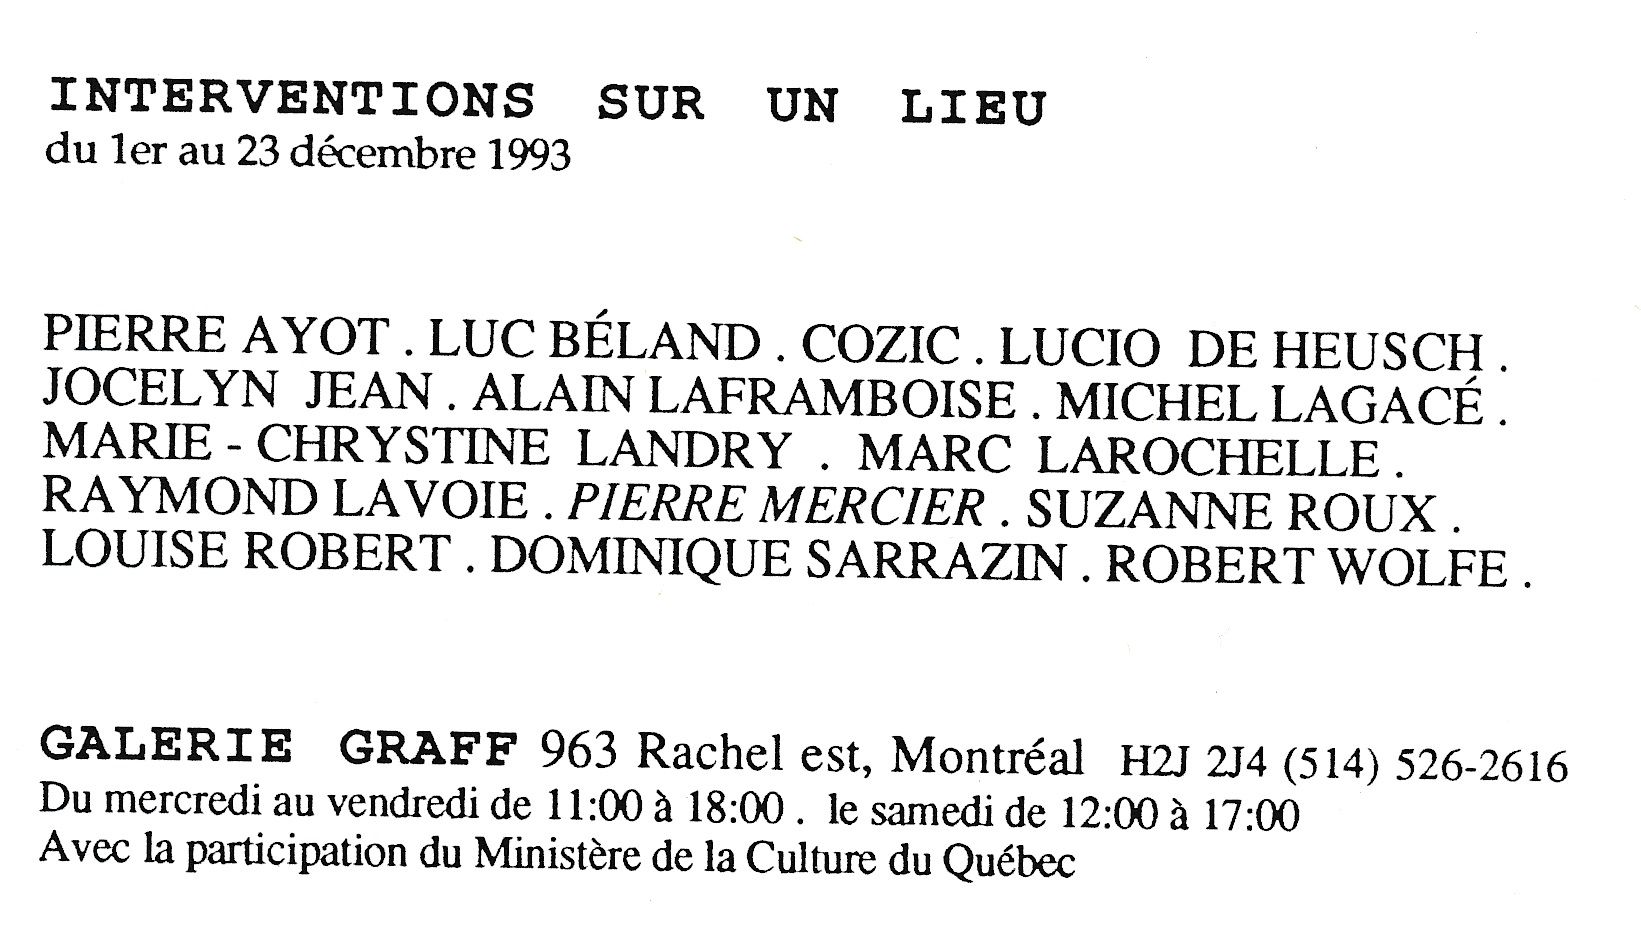 Carton d’invitation de l’exposition Interventions sur un lieu, Galerie Graff, Montréal, 1993.